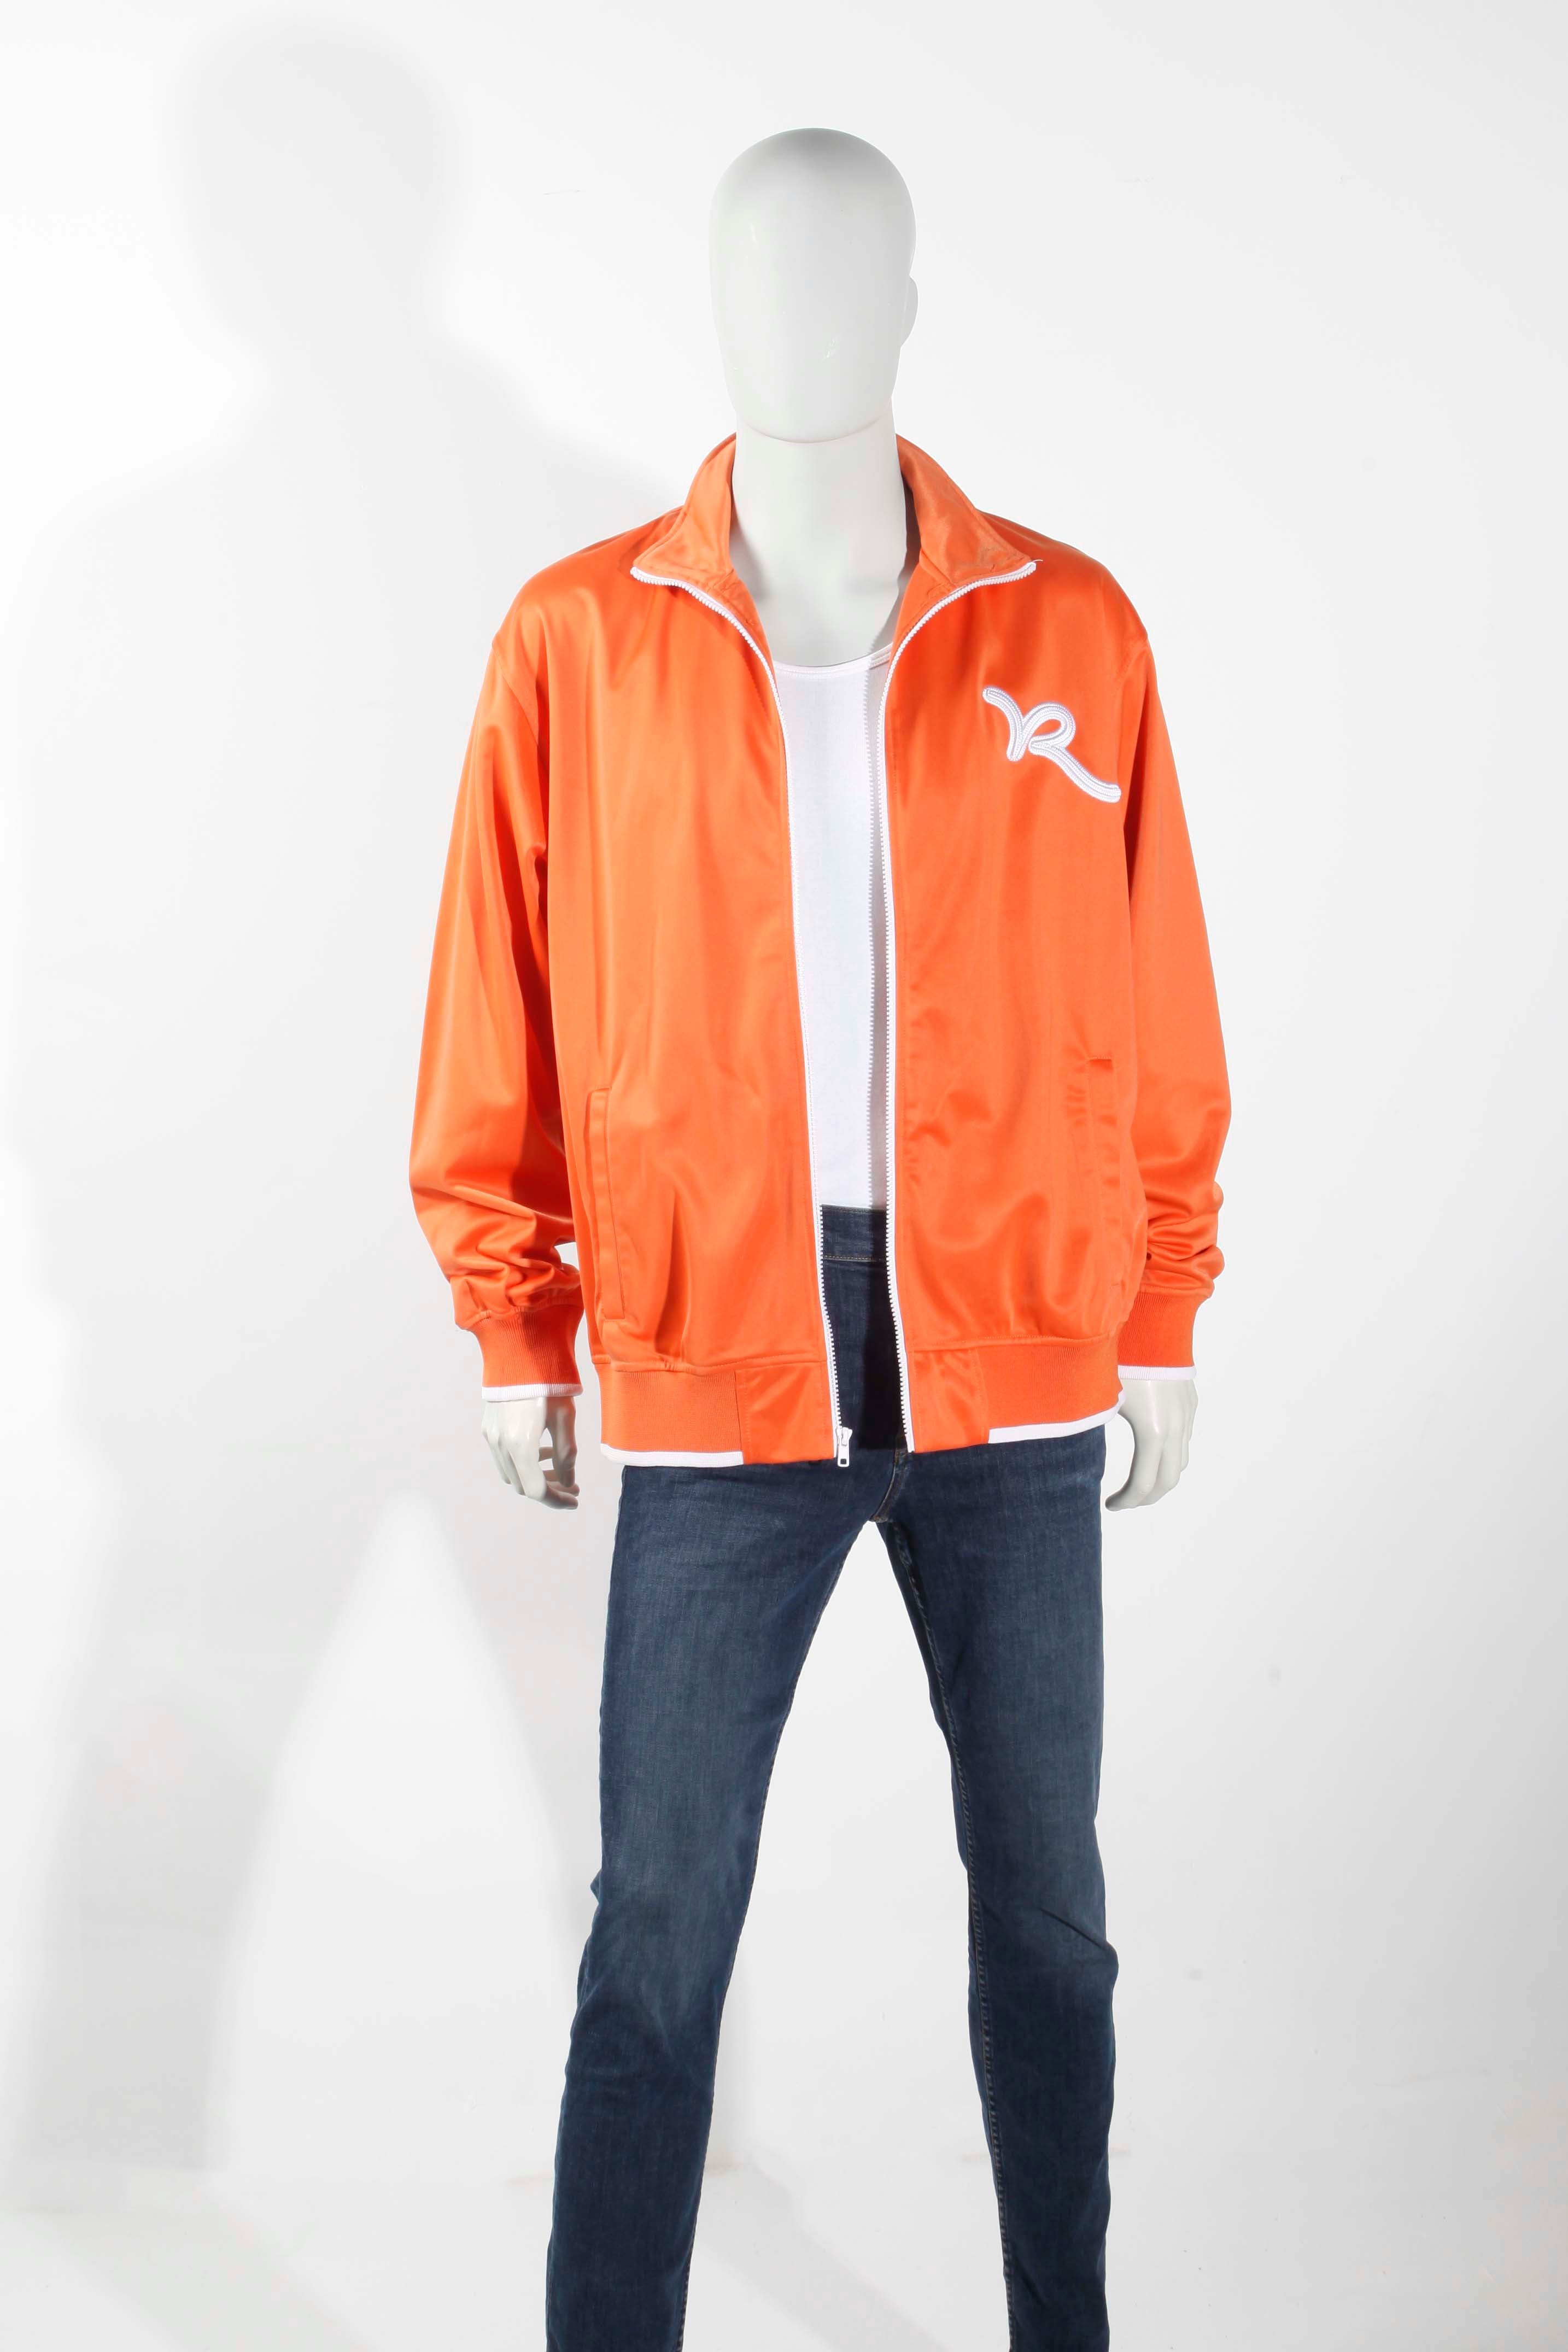 Rocawear Orange Shellsuit Jacket (XLarge)